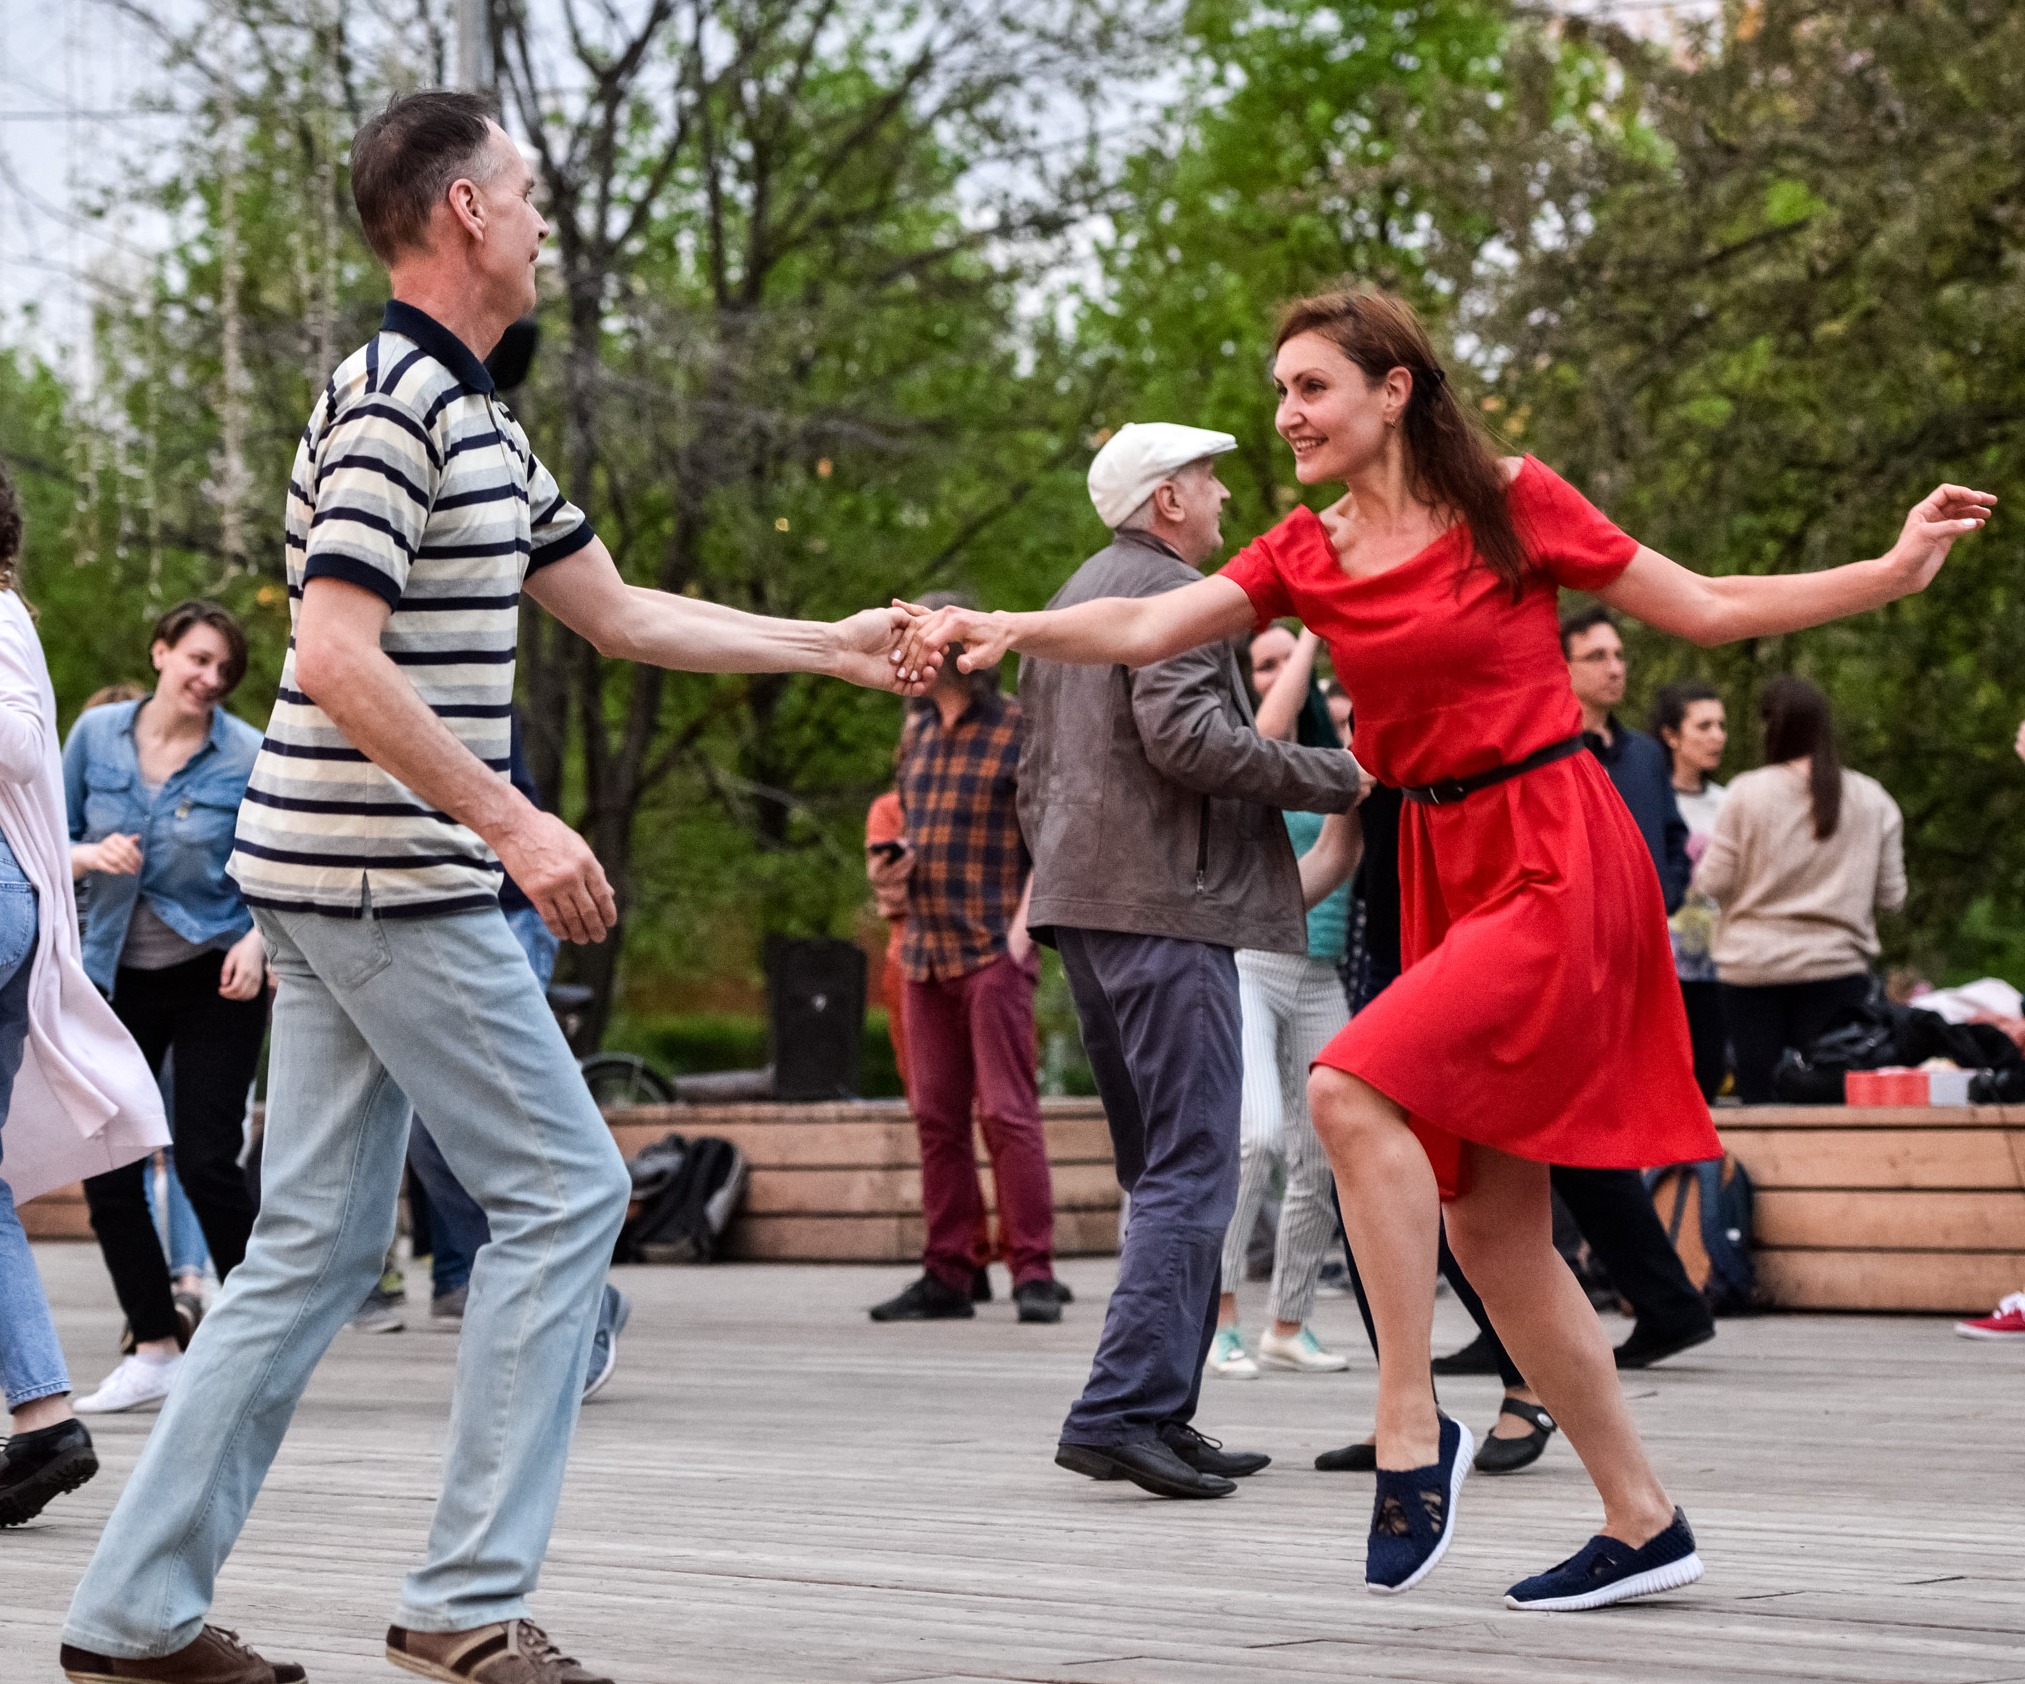 Девушки просто танцевали. Танцплощадка в парке Горького. Танцевальные площадки в парке Горького в Москве. Танцы в парке. Люди танцуют в парке.